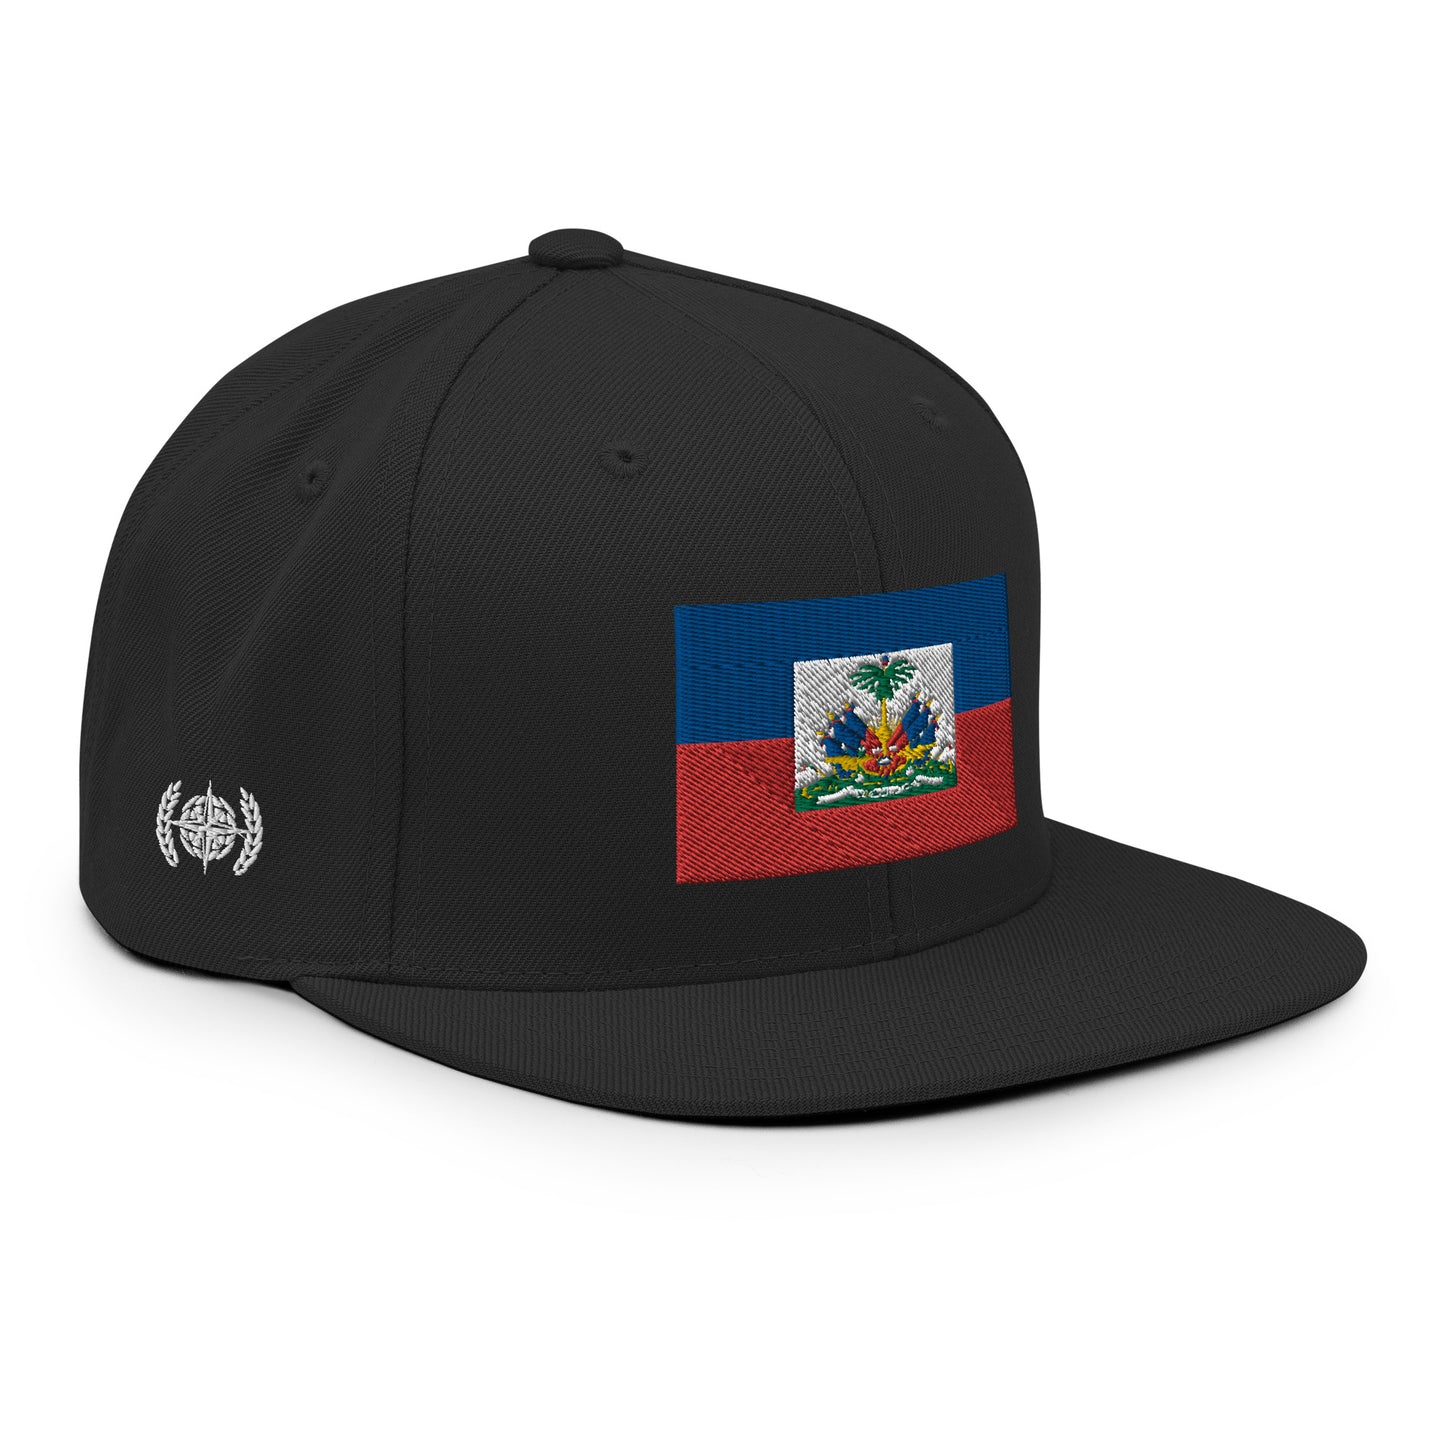 Heritage & Honor Snapback Cap 'Haiti' 2